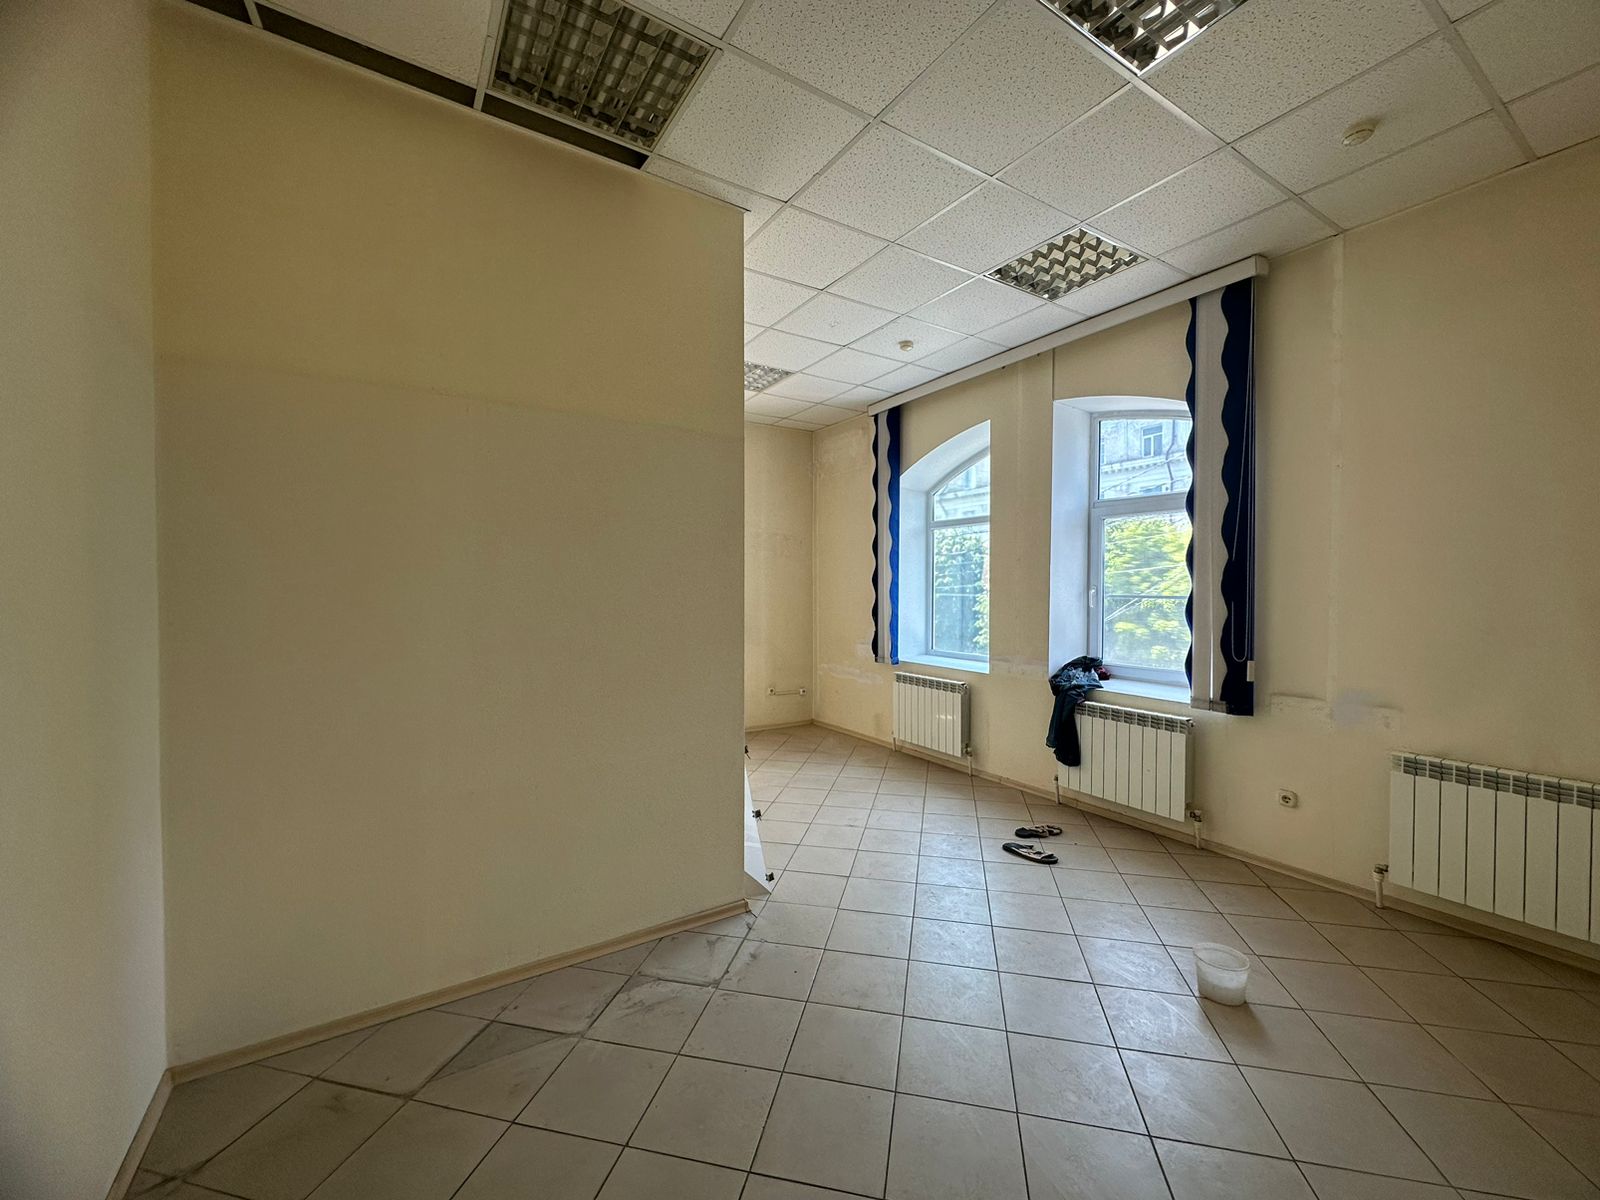 Предлагаем к аренде офисы на 2ом этаже по ул. Карла Маркса д.53, площадью 20 м², напрямую от собственника._6